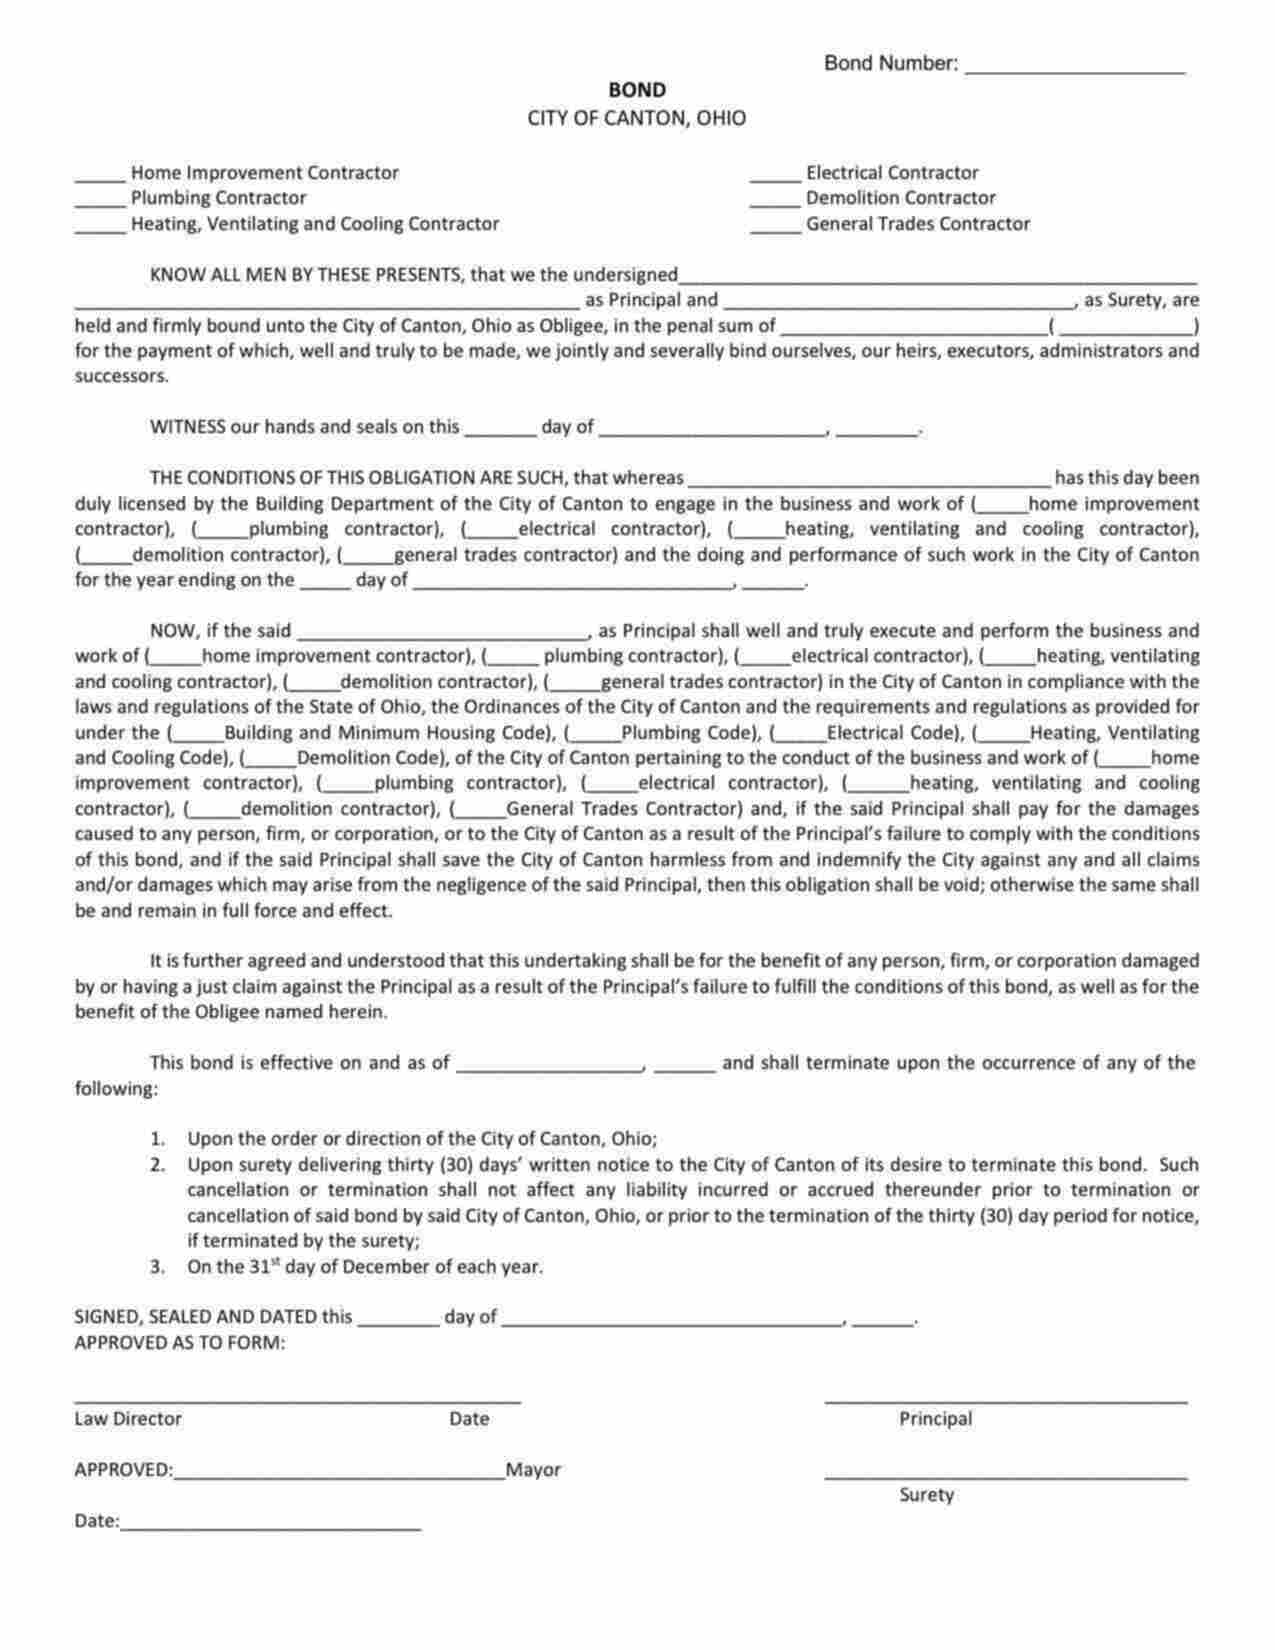 Ohio General Trades Contractor Bond Form